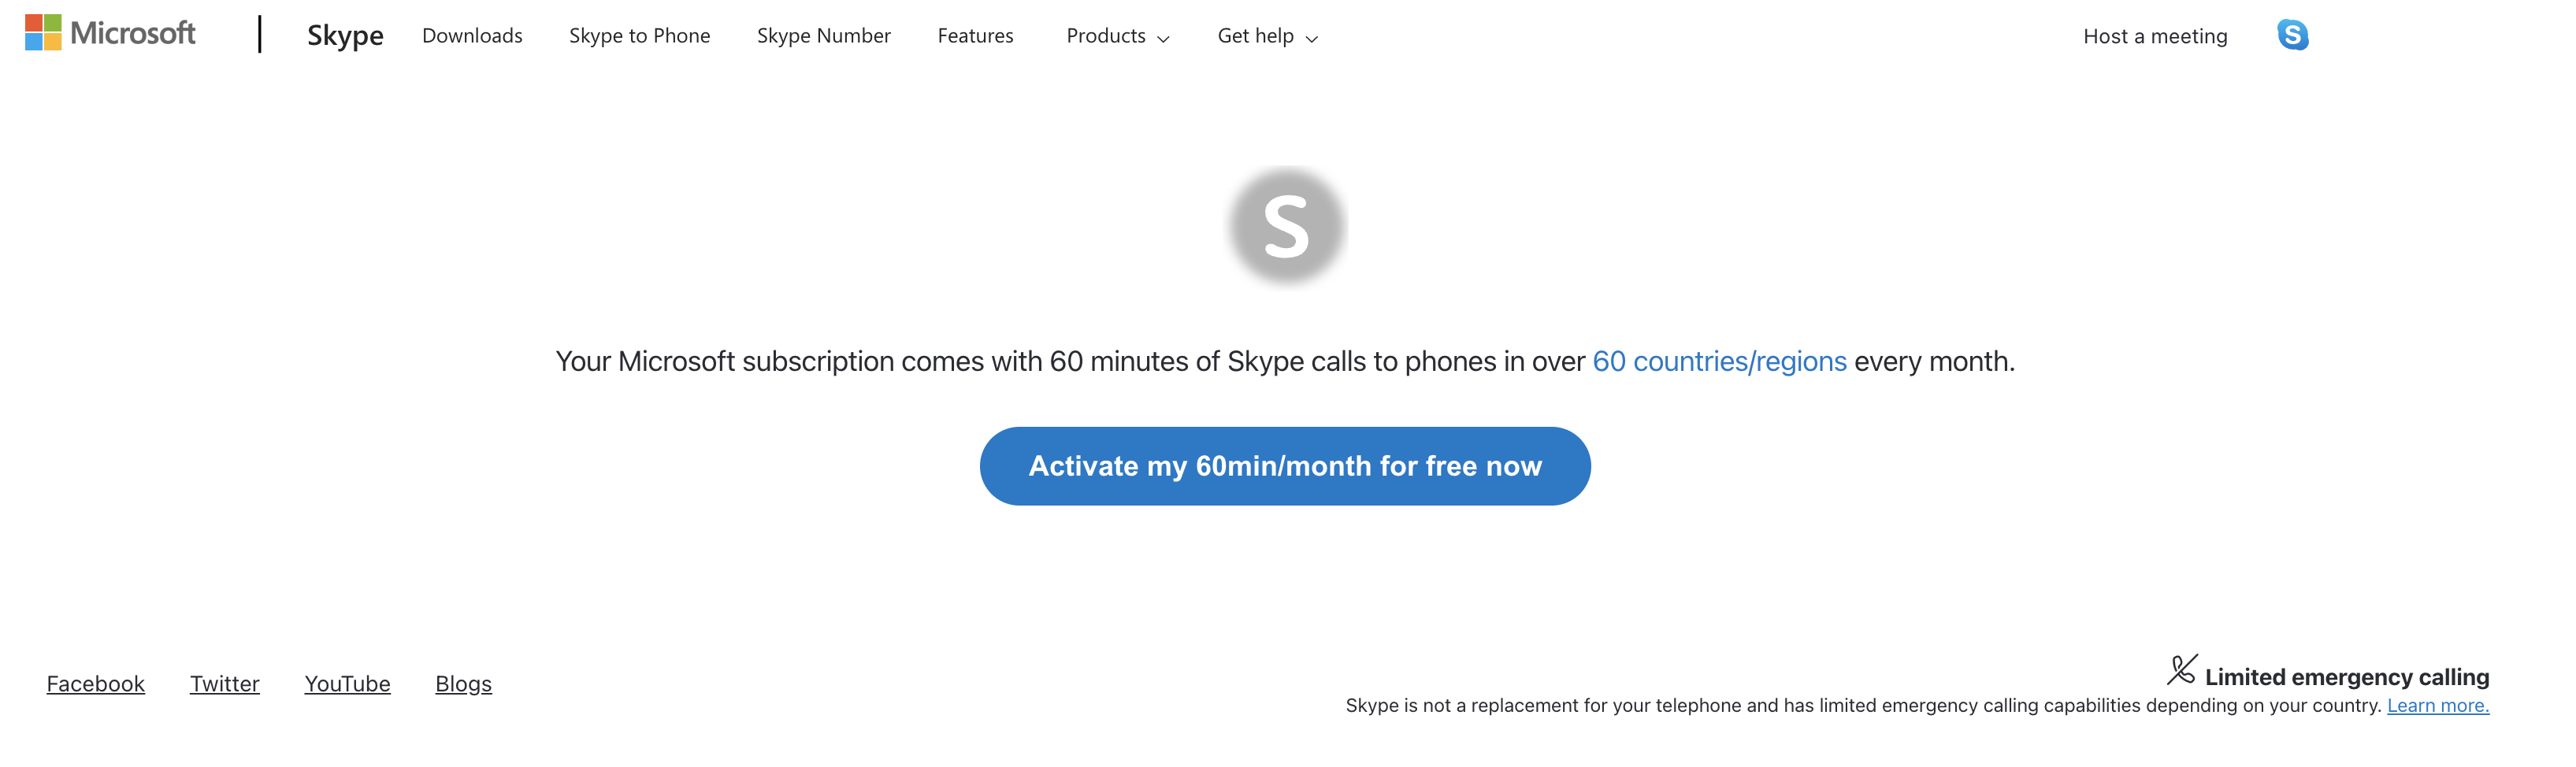 דף אינטרנט להפעלת 60 דקות ללא תשלום באמצעות Skype